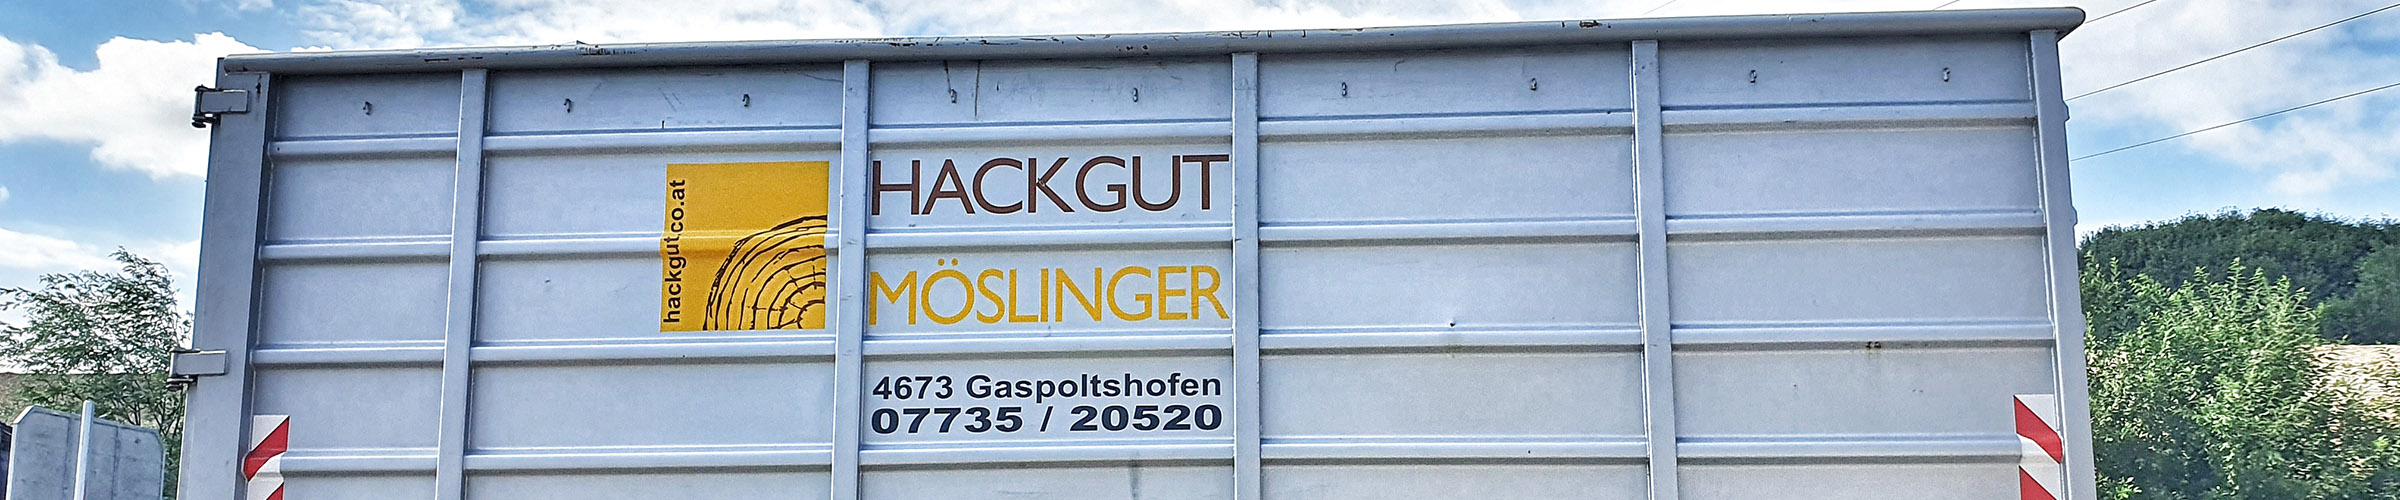 Hackgut Möslinger aus OÖ_Containerdienst